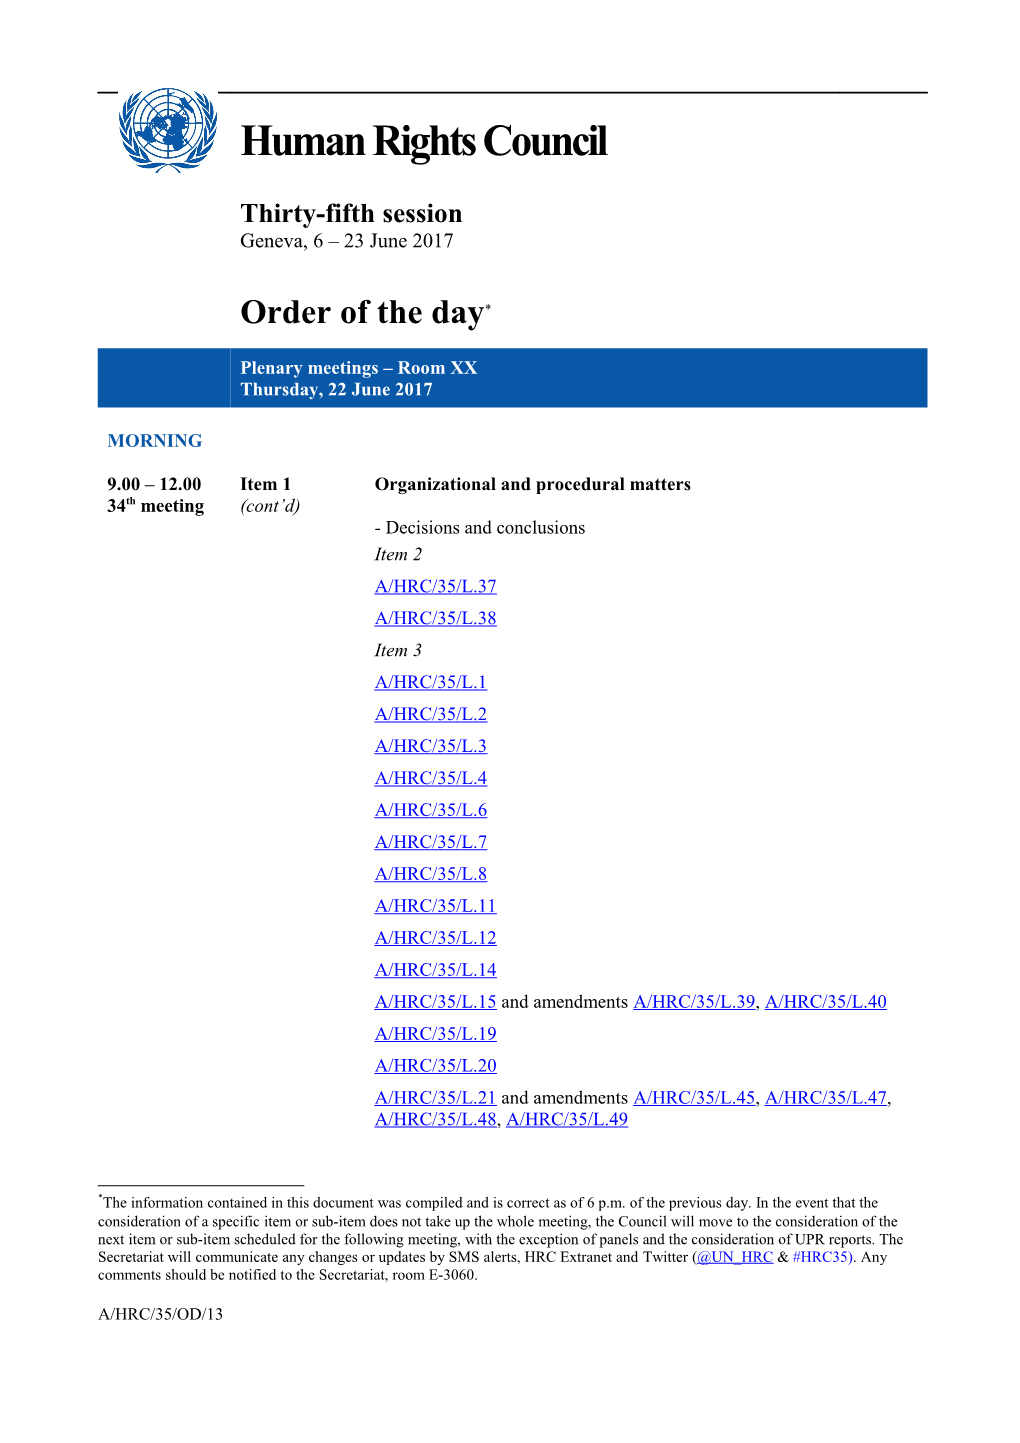 Order of the Day, Thursday 22 June 2017